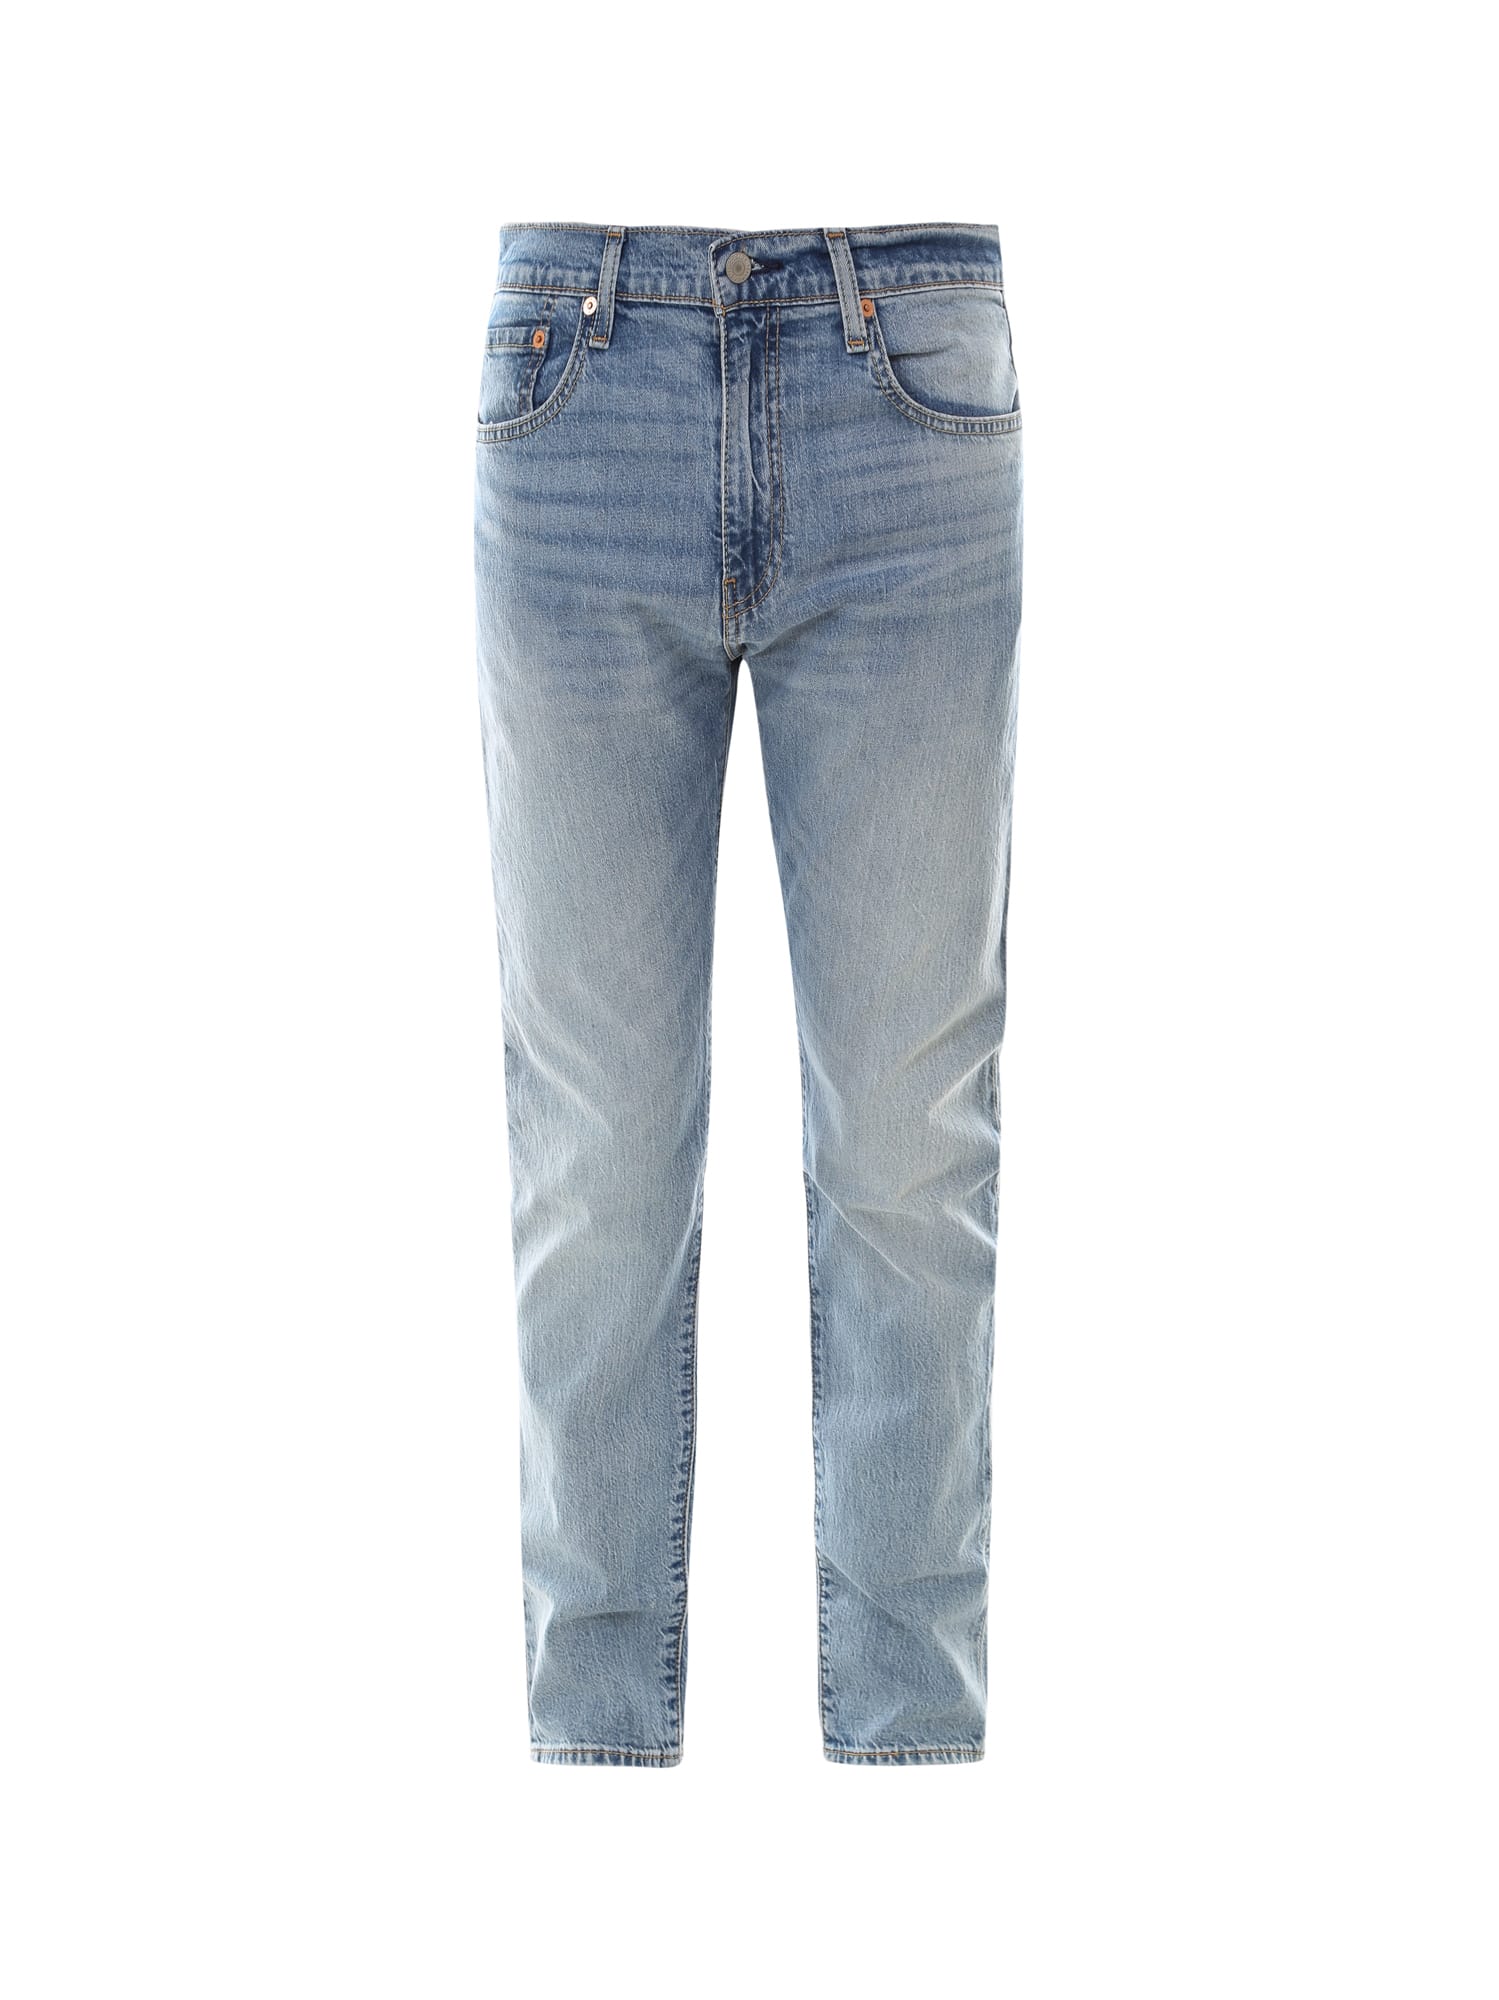 Levi's 512 Slim Taper Jeans In Blue